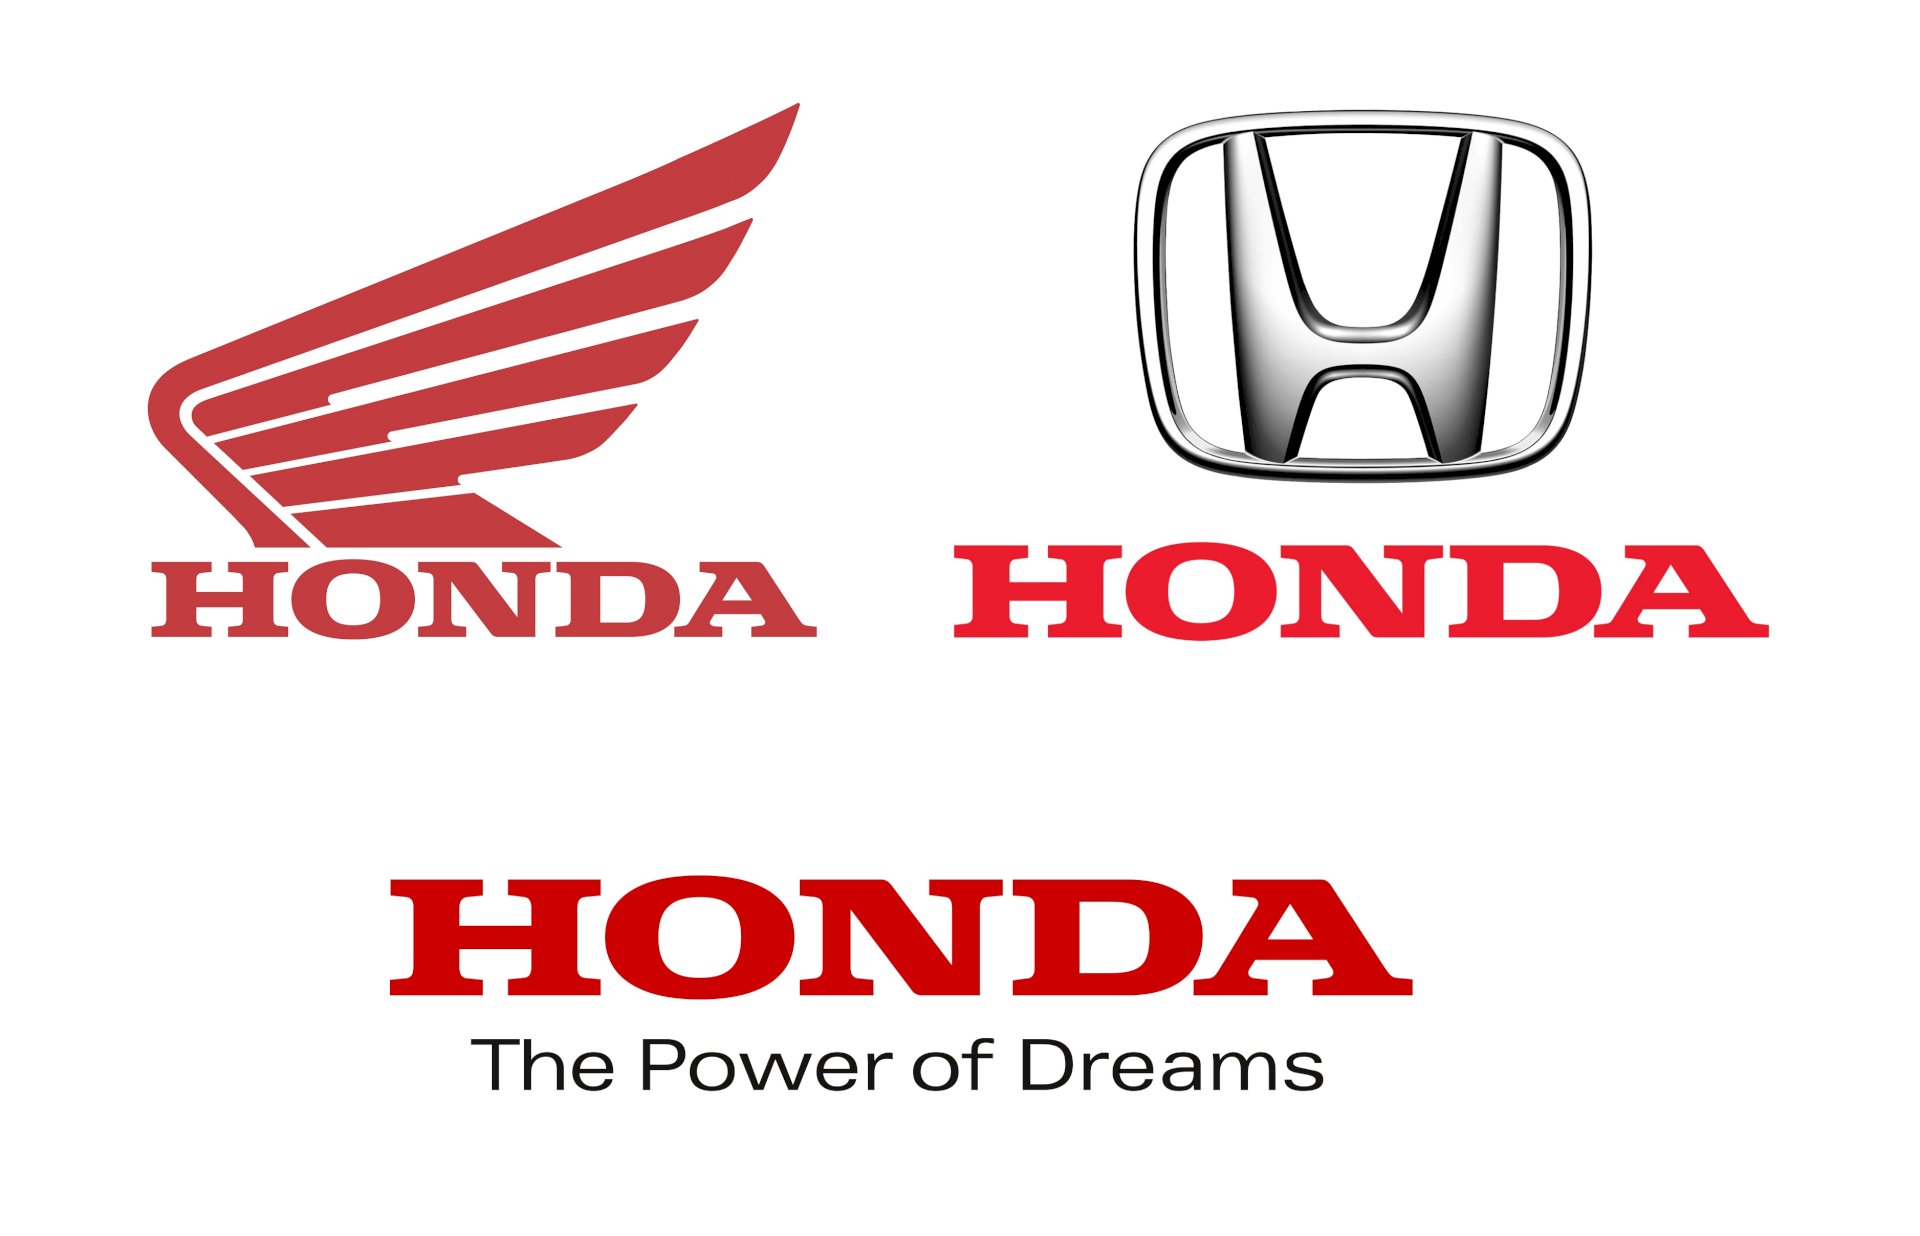 Honda là thương hiệu nằm trong top 6 nhà sản xuất xe hơi lớn nhất thế giới